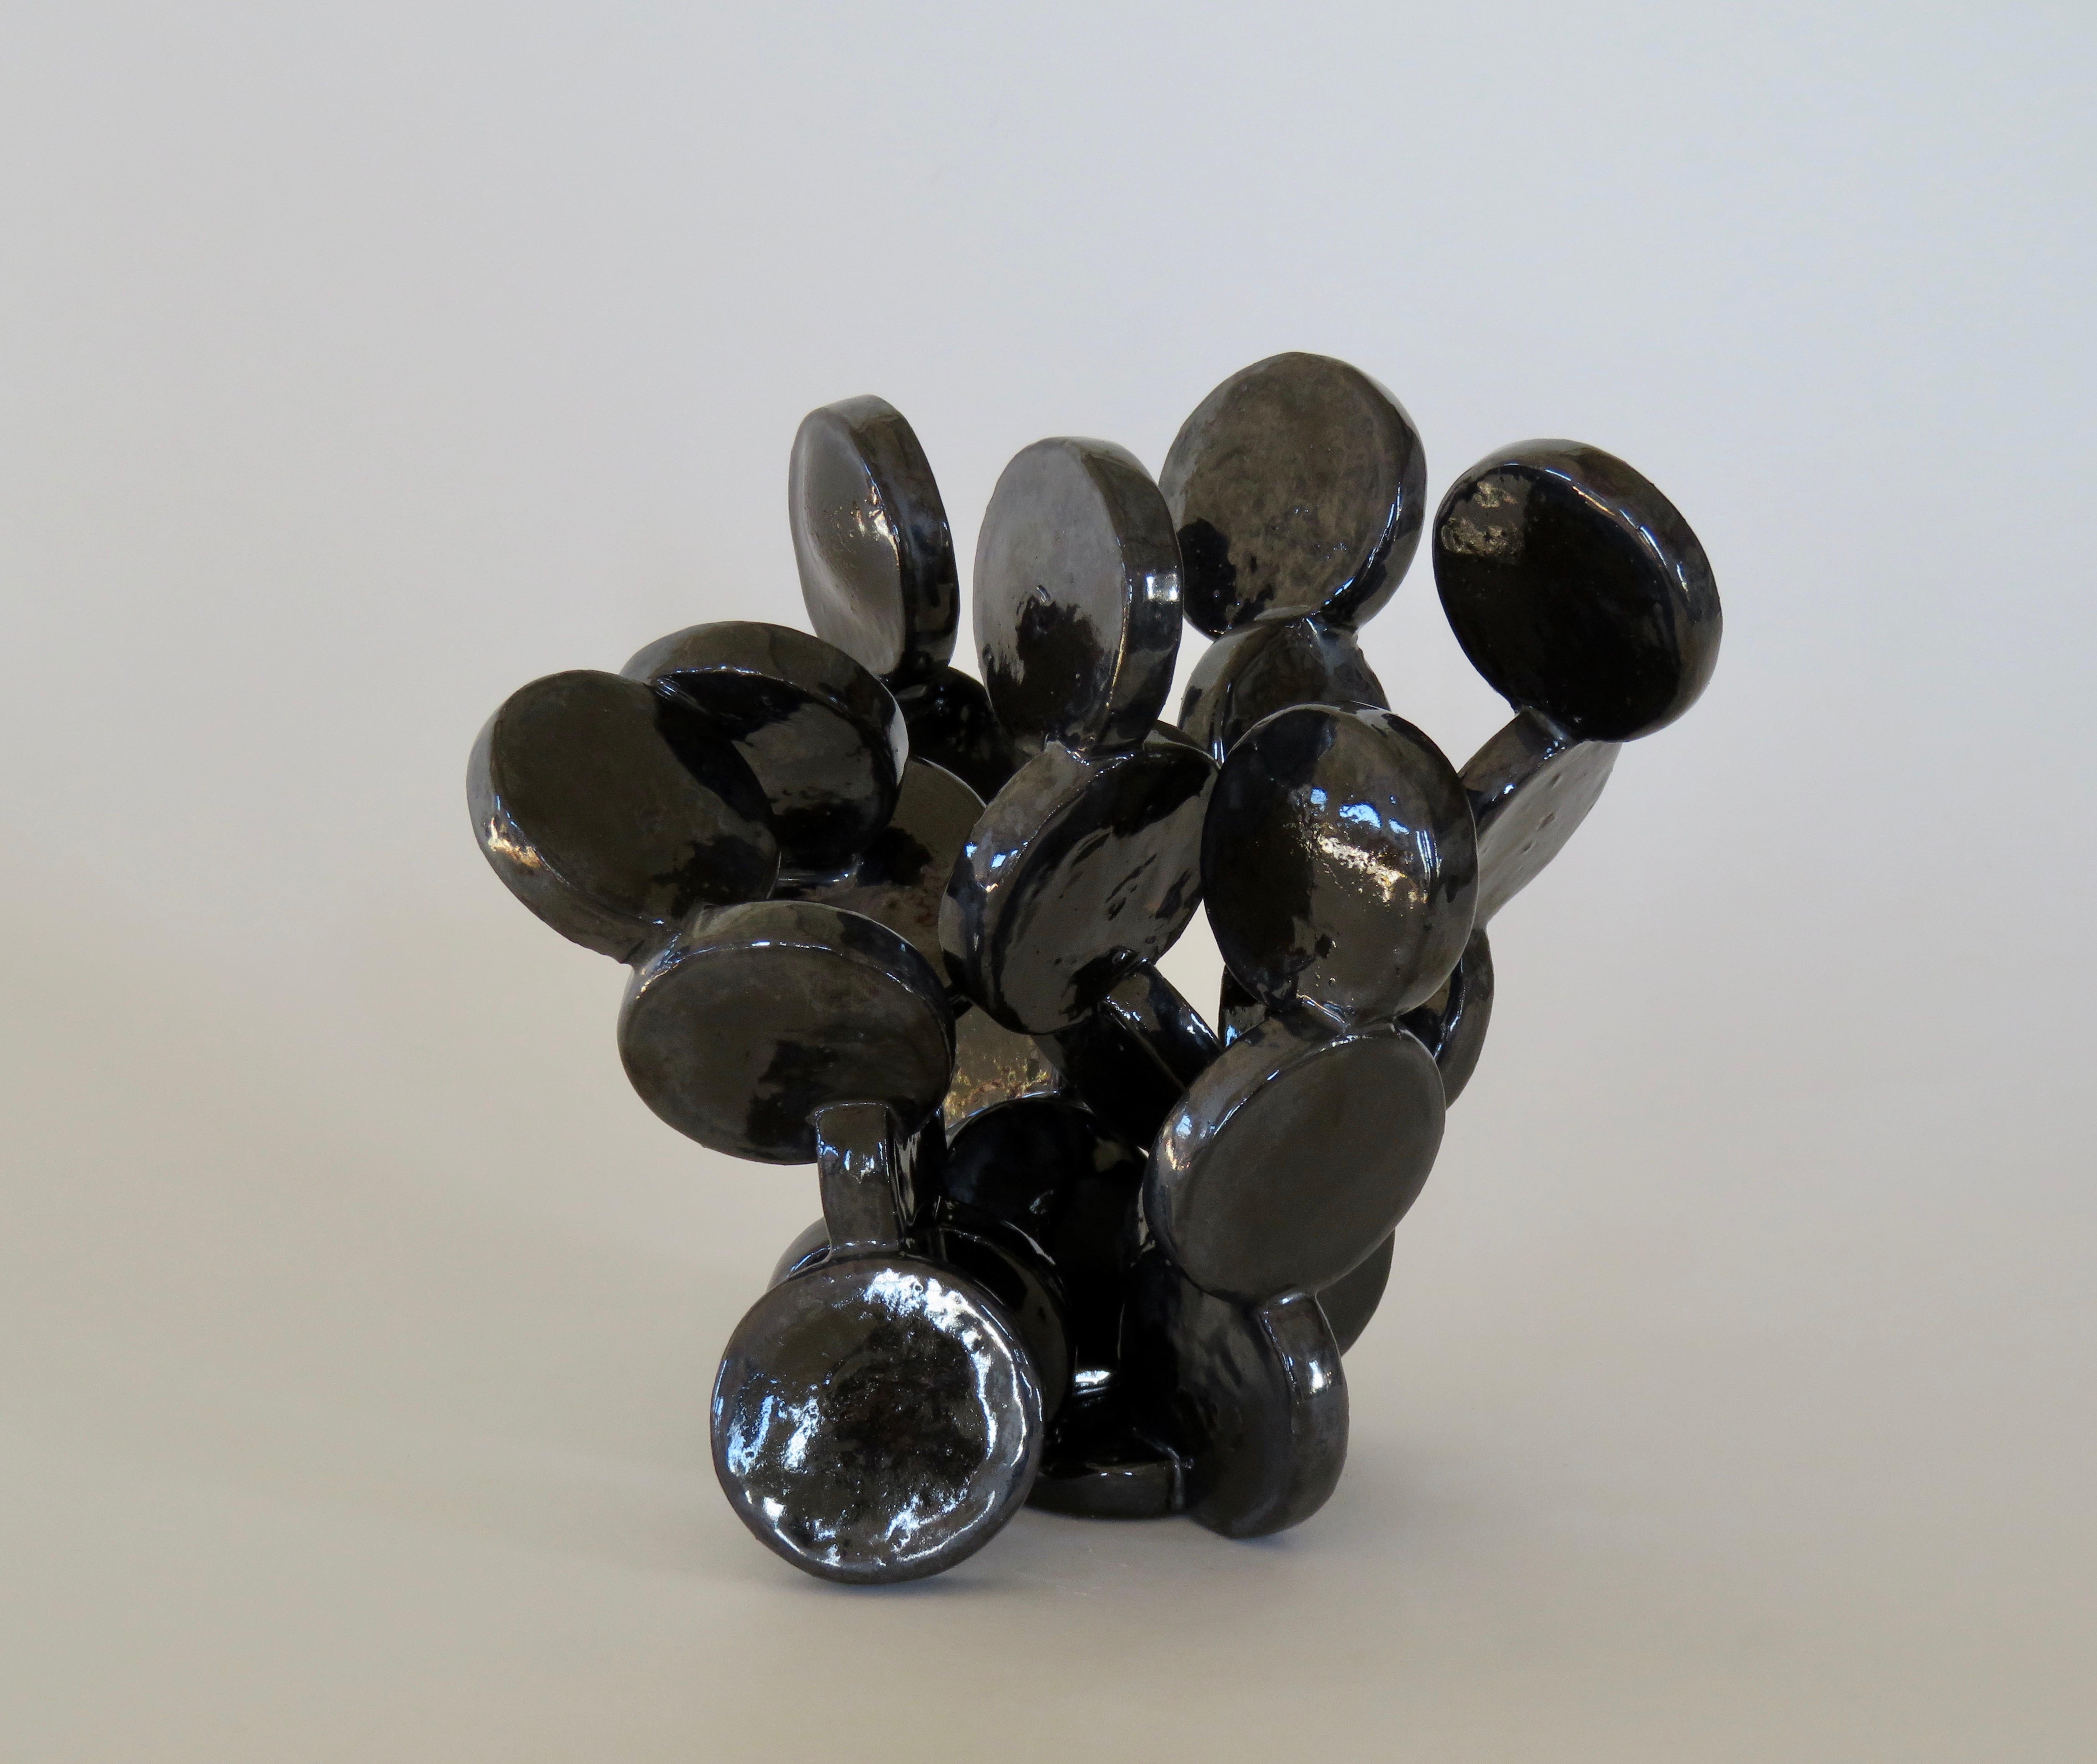 Shiny Black Discs, Handbuilt Abstract Ceramic Sculpture 2